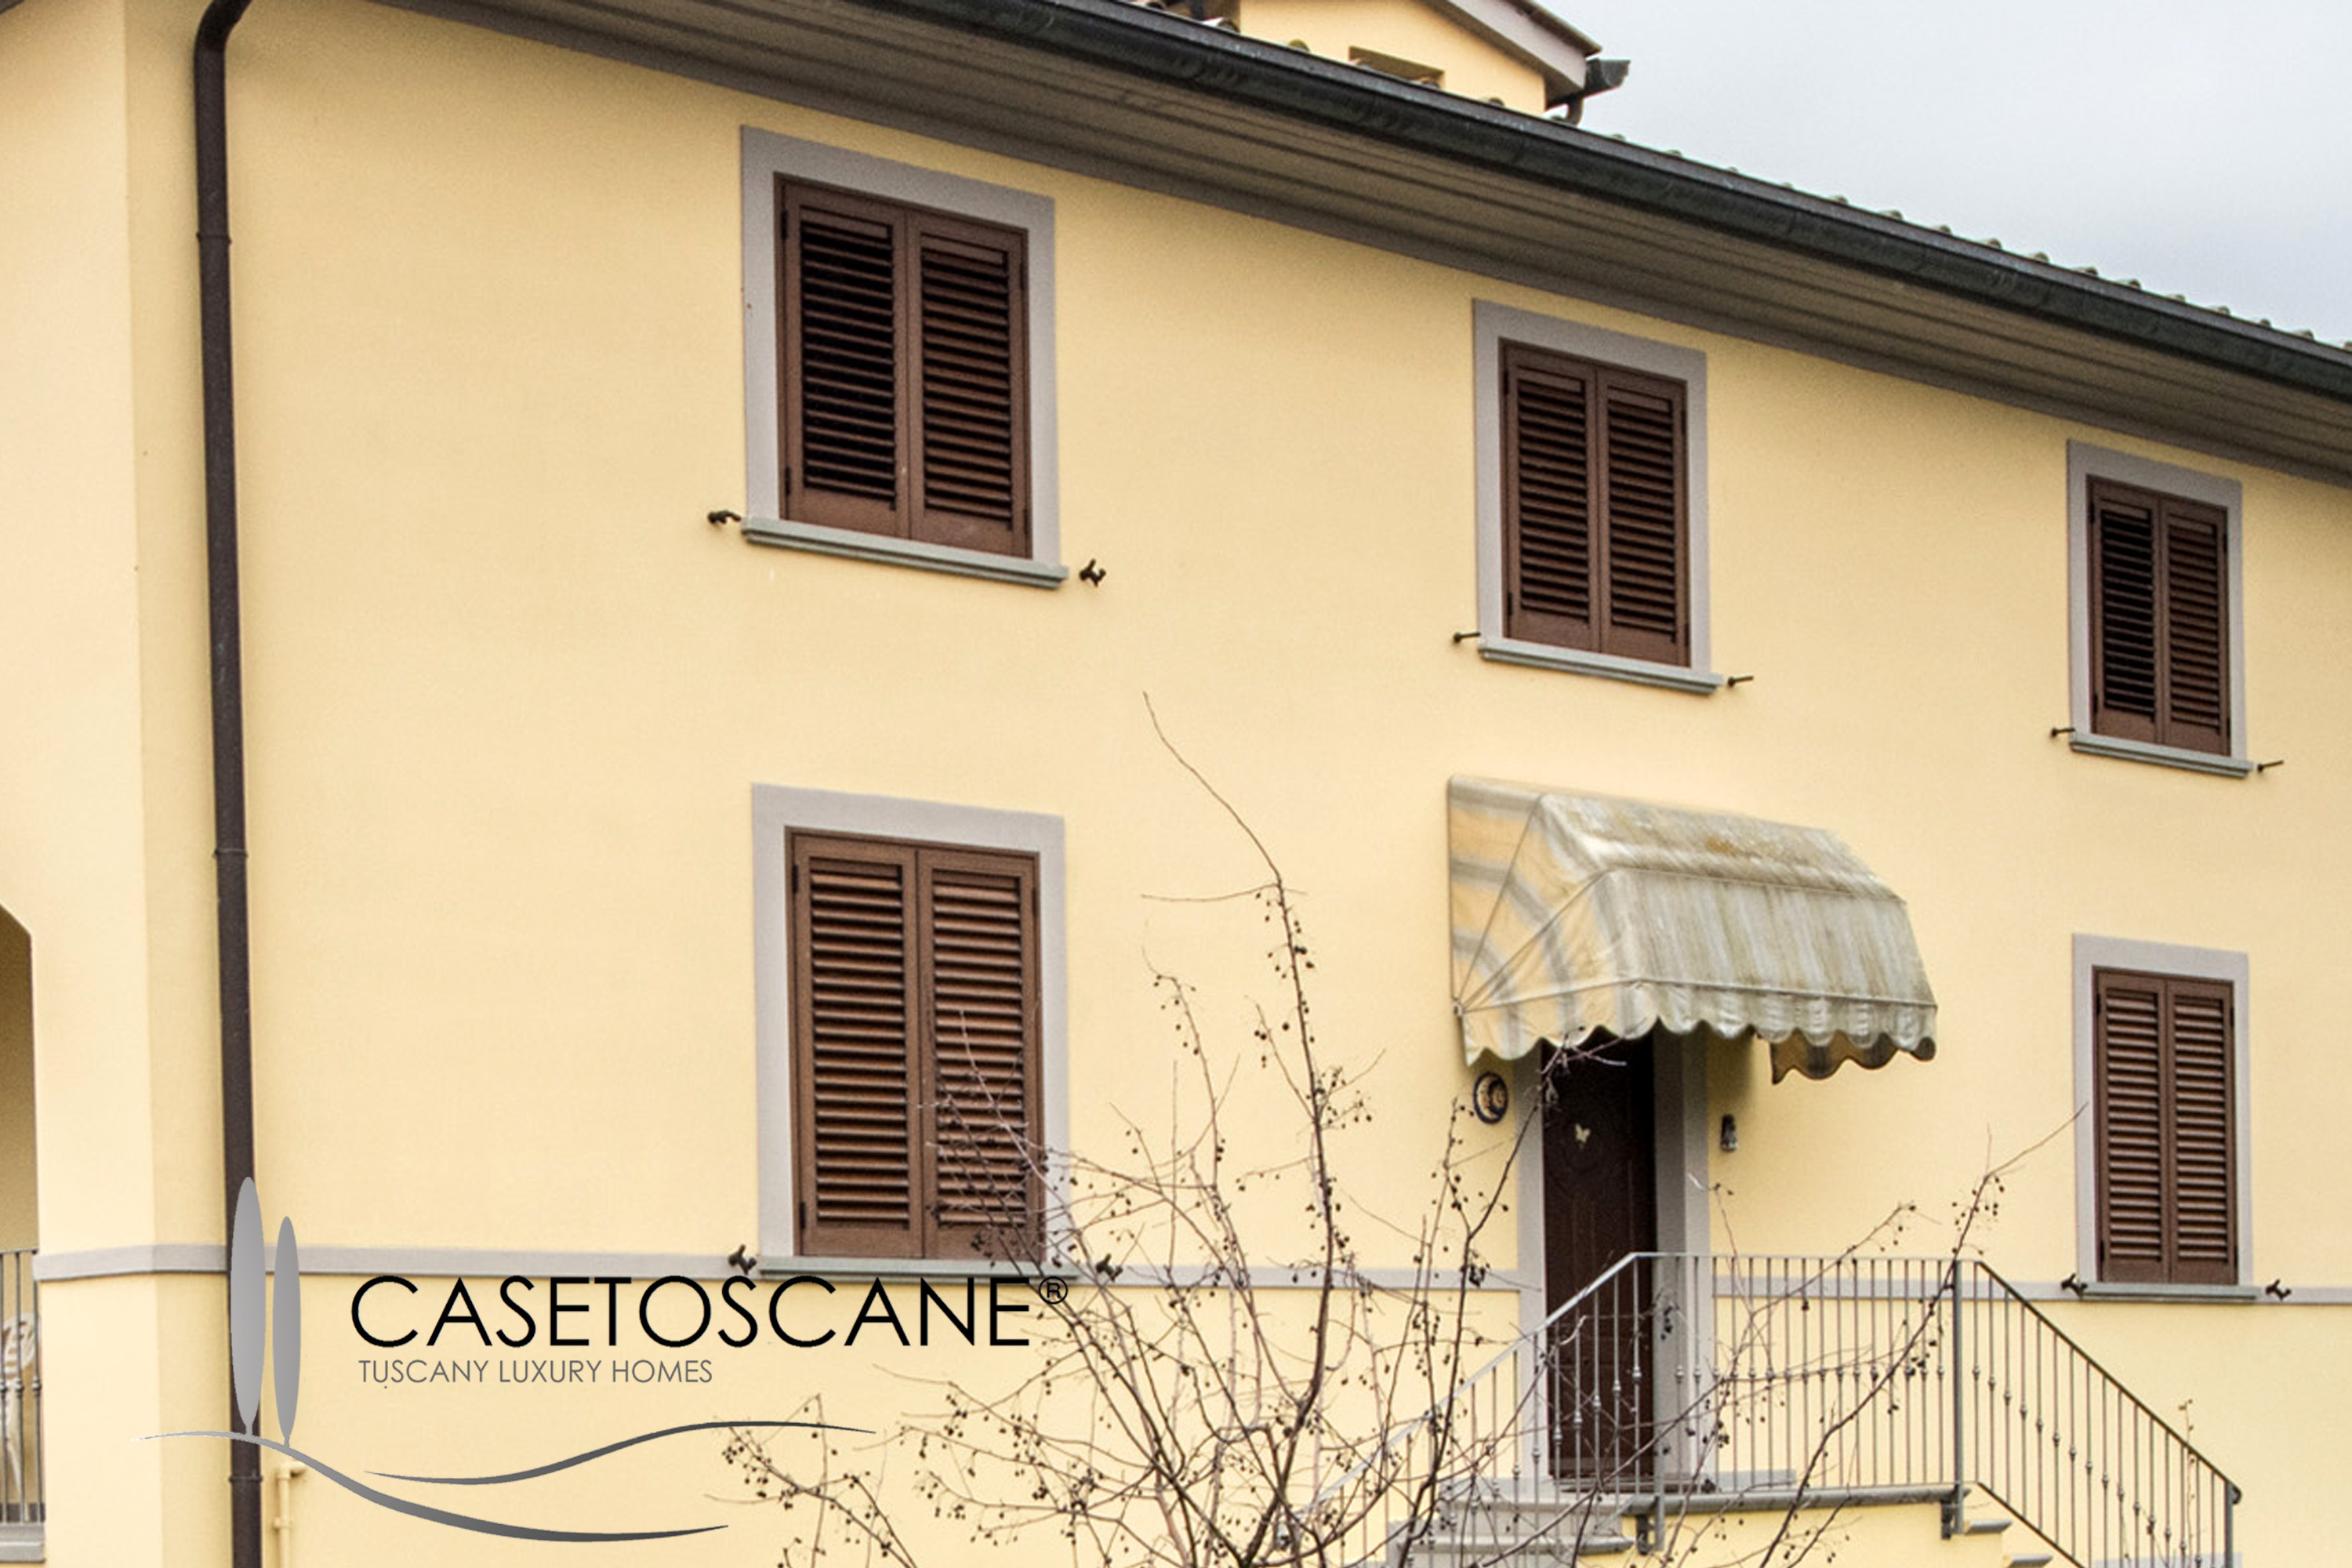 S245 - Villa singola di mq.380, recente costruzione, predisposta per due nuclei abitativi, con bel giardino e taverna, a soli 10' da Arezzo